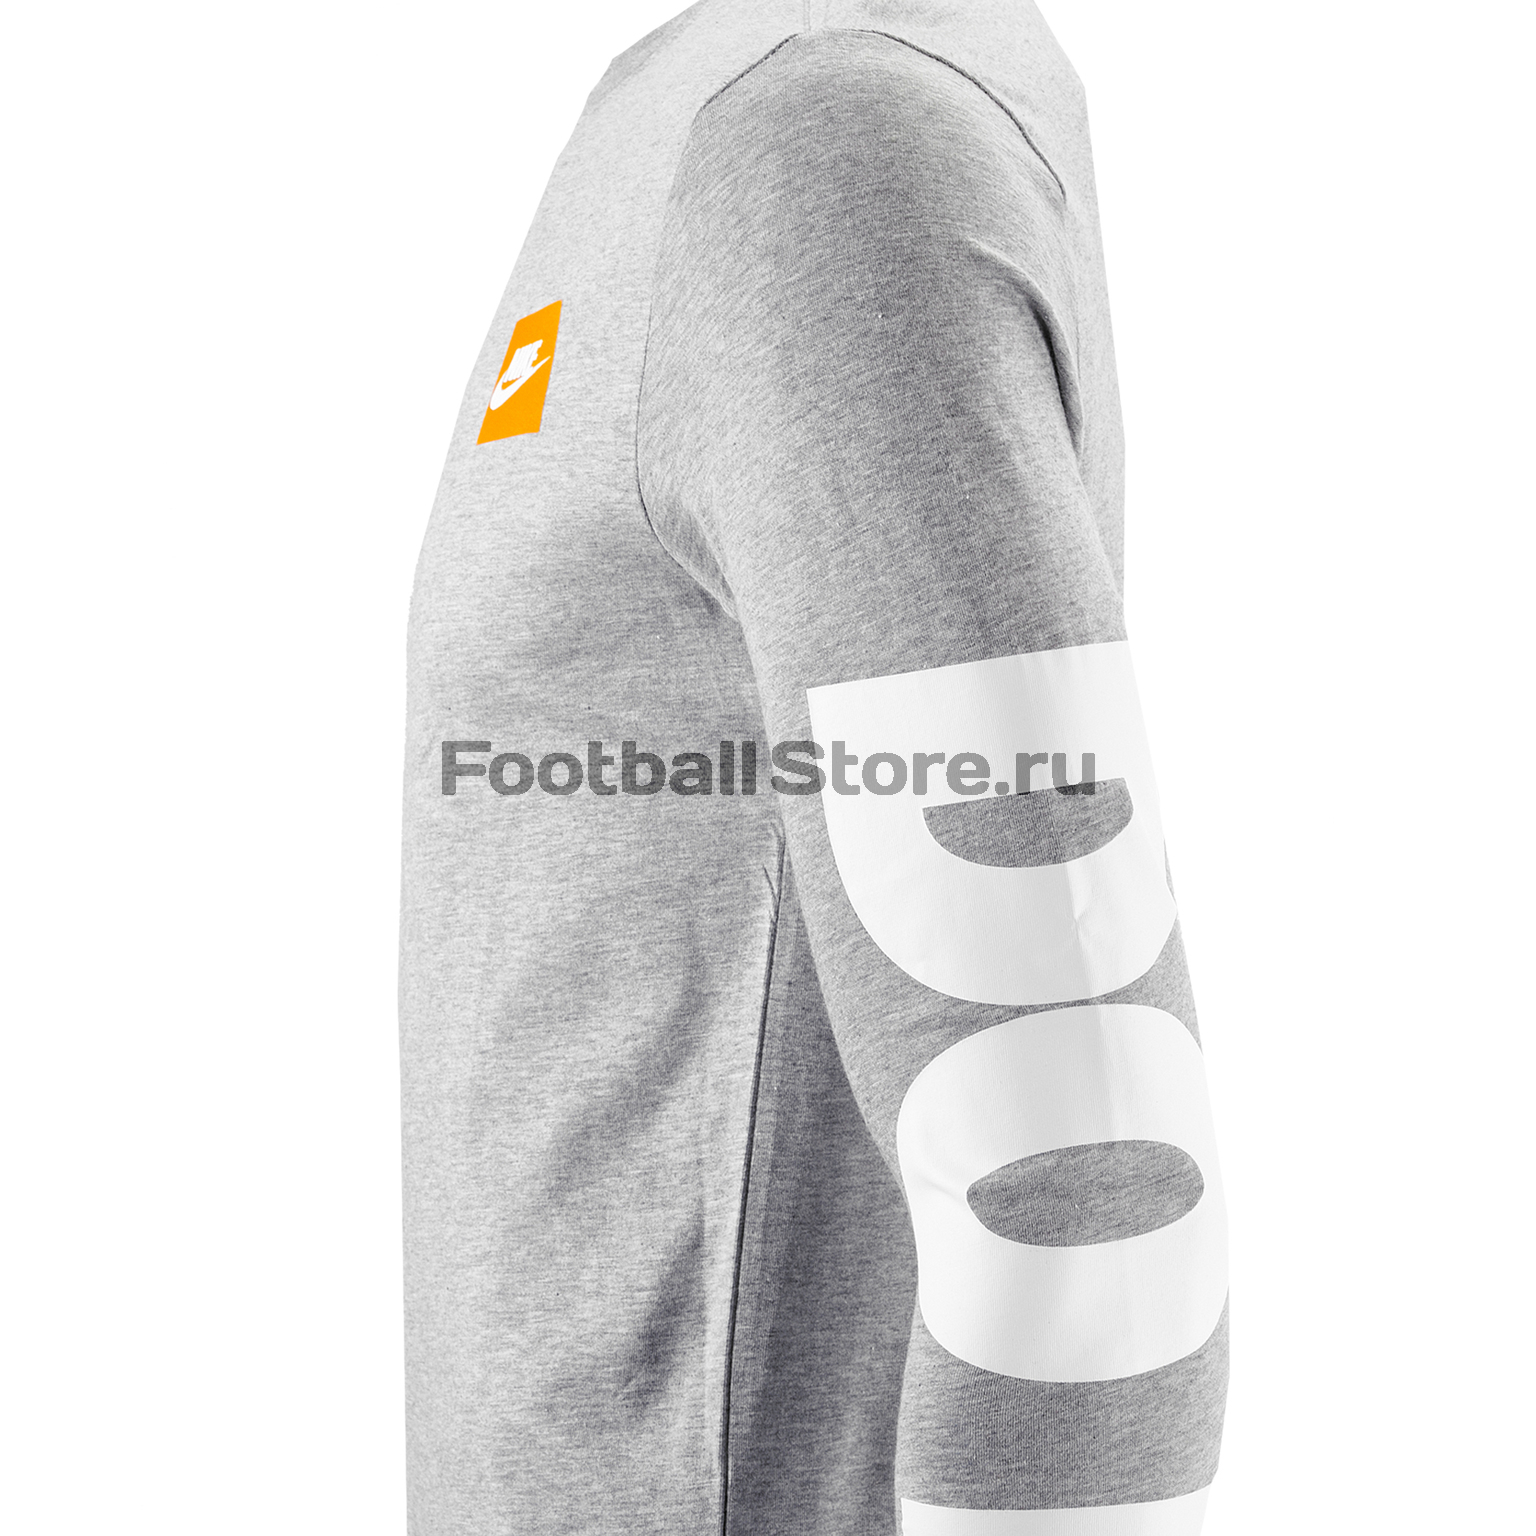 Футболка с длинным рукавом Nike Tee LS AR5197-063